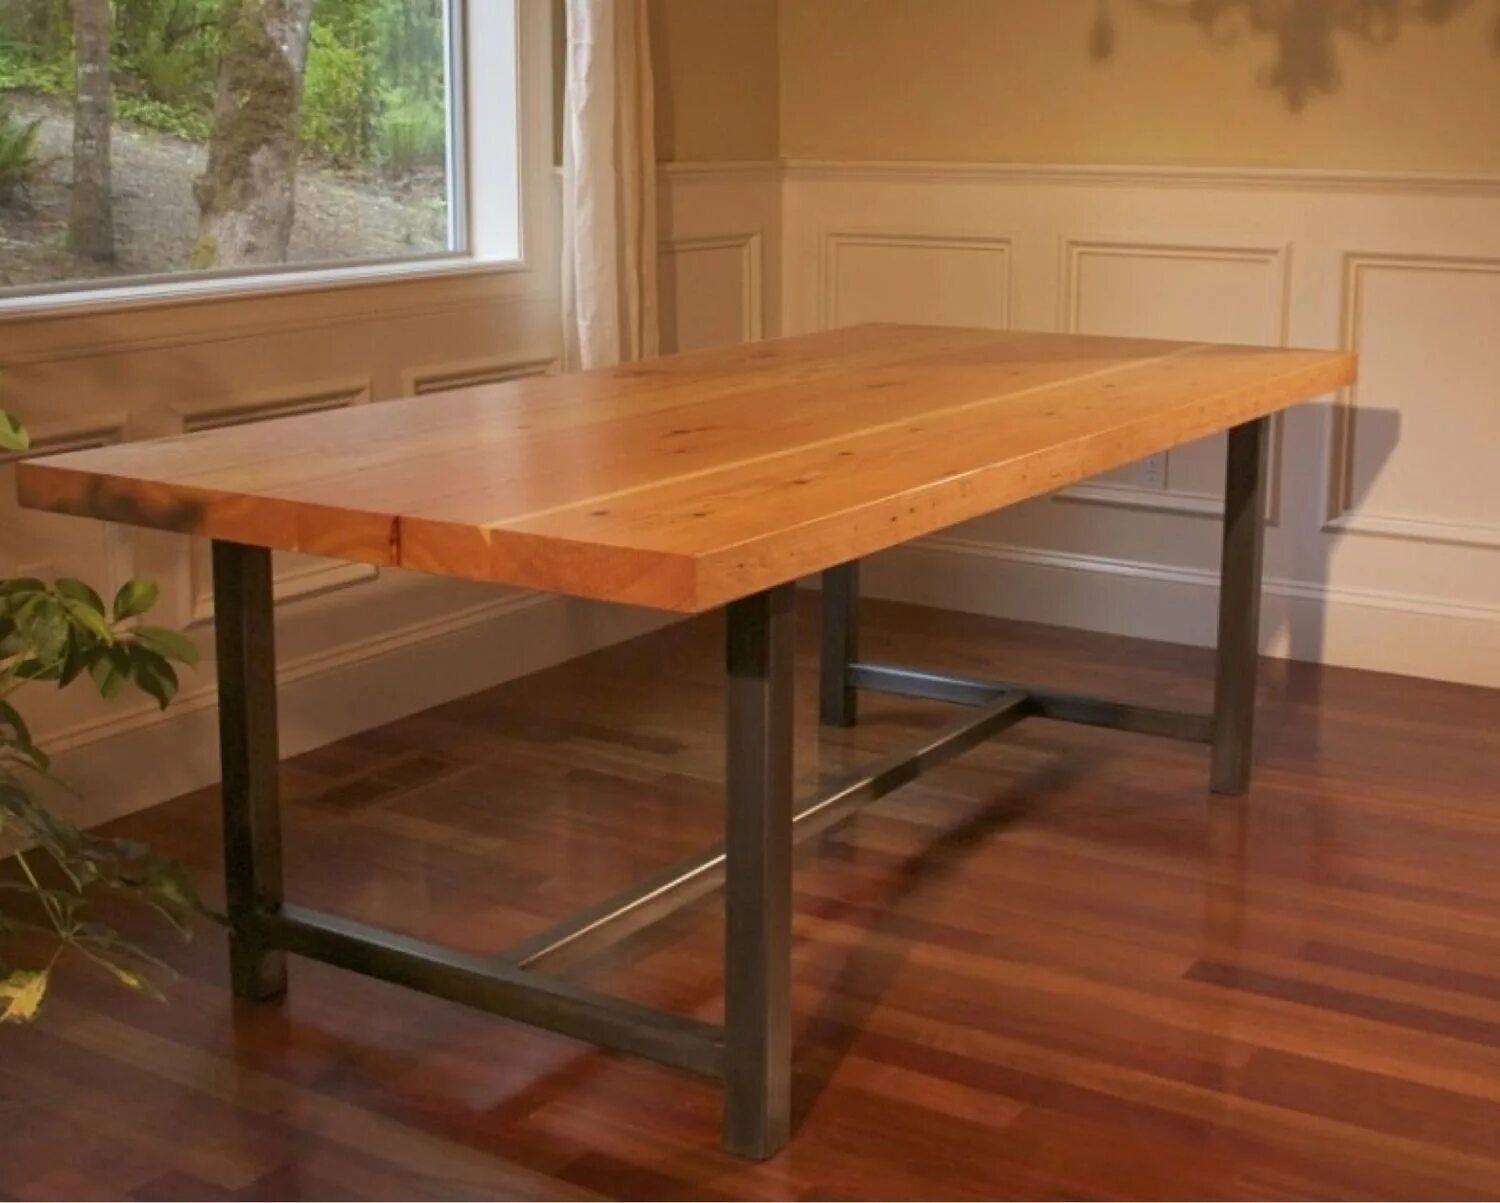 Железный кухонный стол. Письменный стол Wood&Steel psl100. Стол с деревянной столешницей. Деревянный стол на металлическом каркасе. Обеденный стол из профильной трубы.